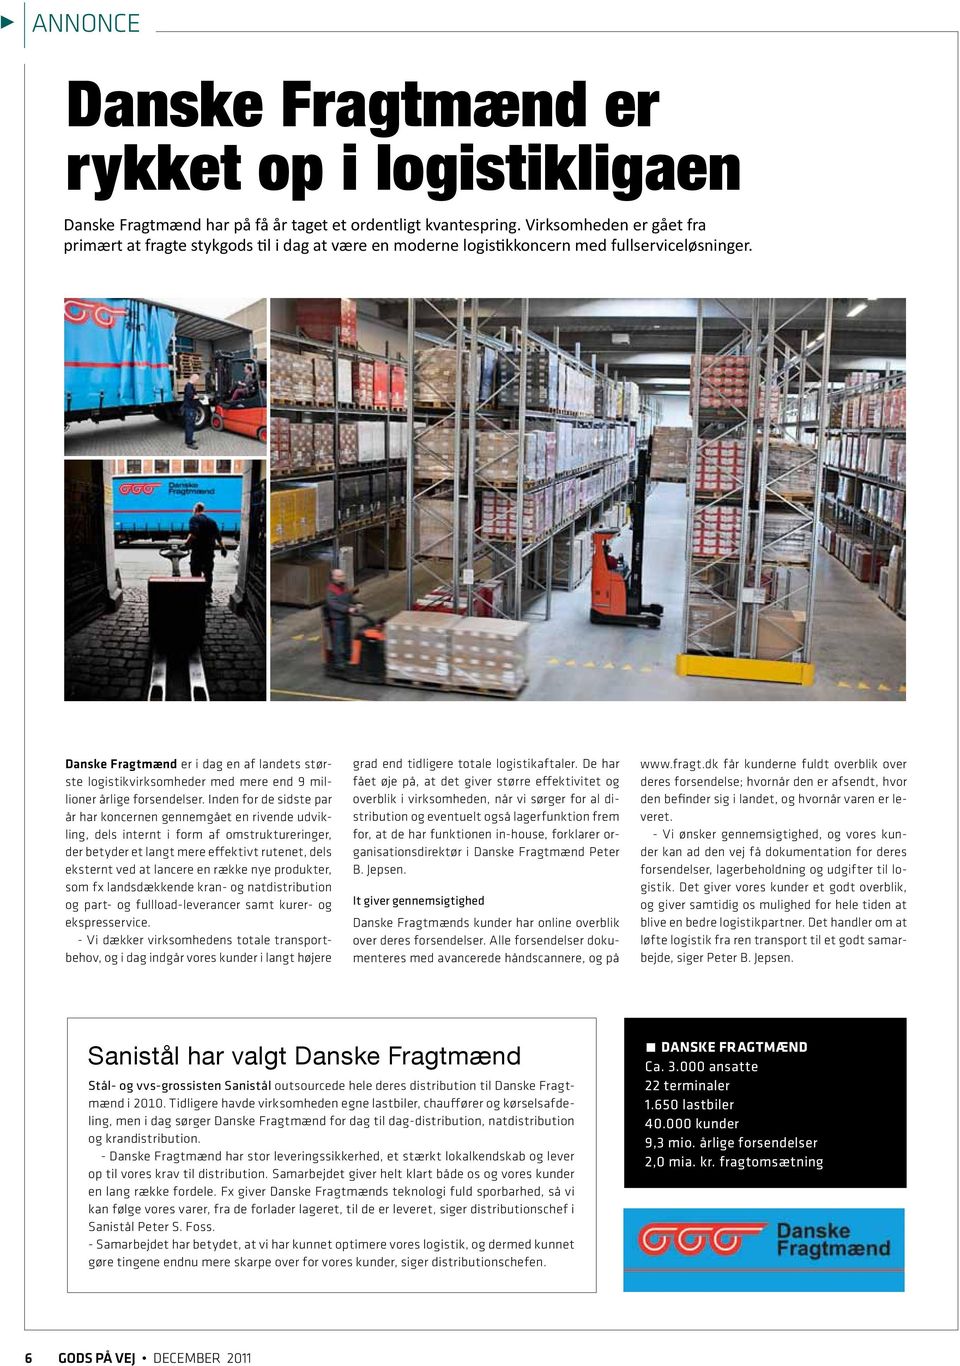 Danske Fragtmænd er i dag en af landets største logistikvirksomheder med mere end 9 millioner årlige forsendelser.